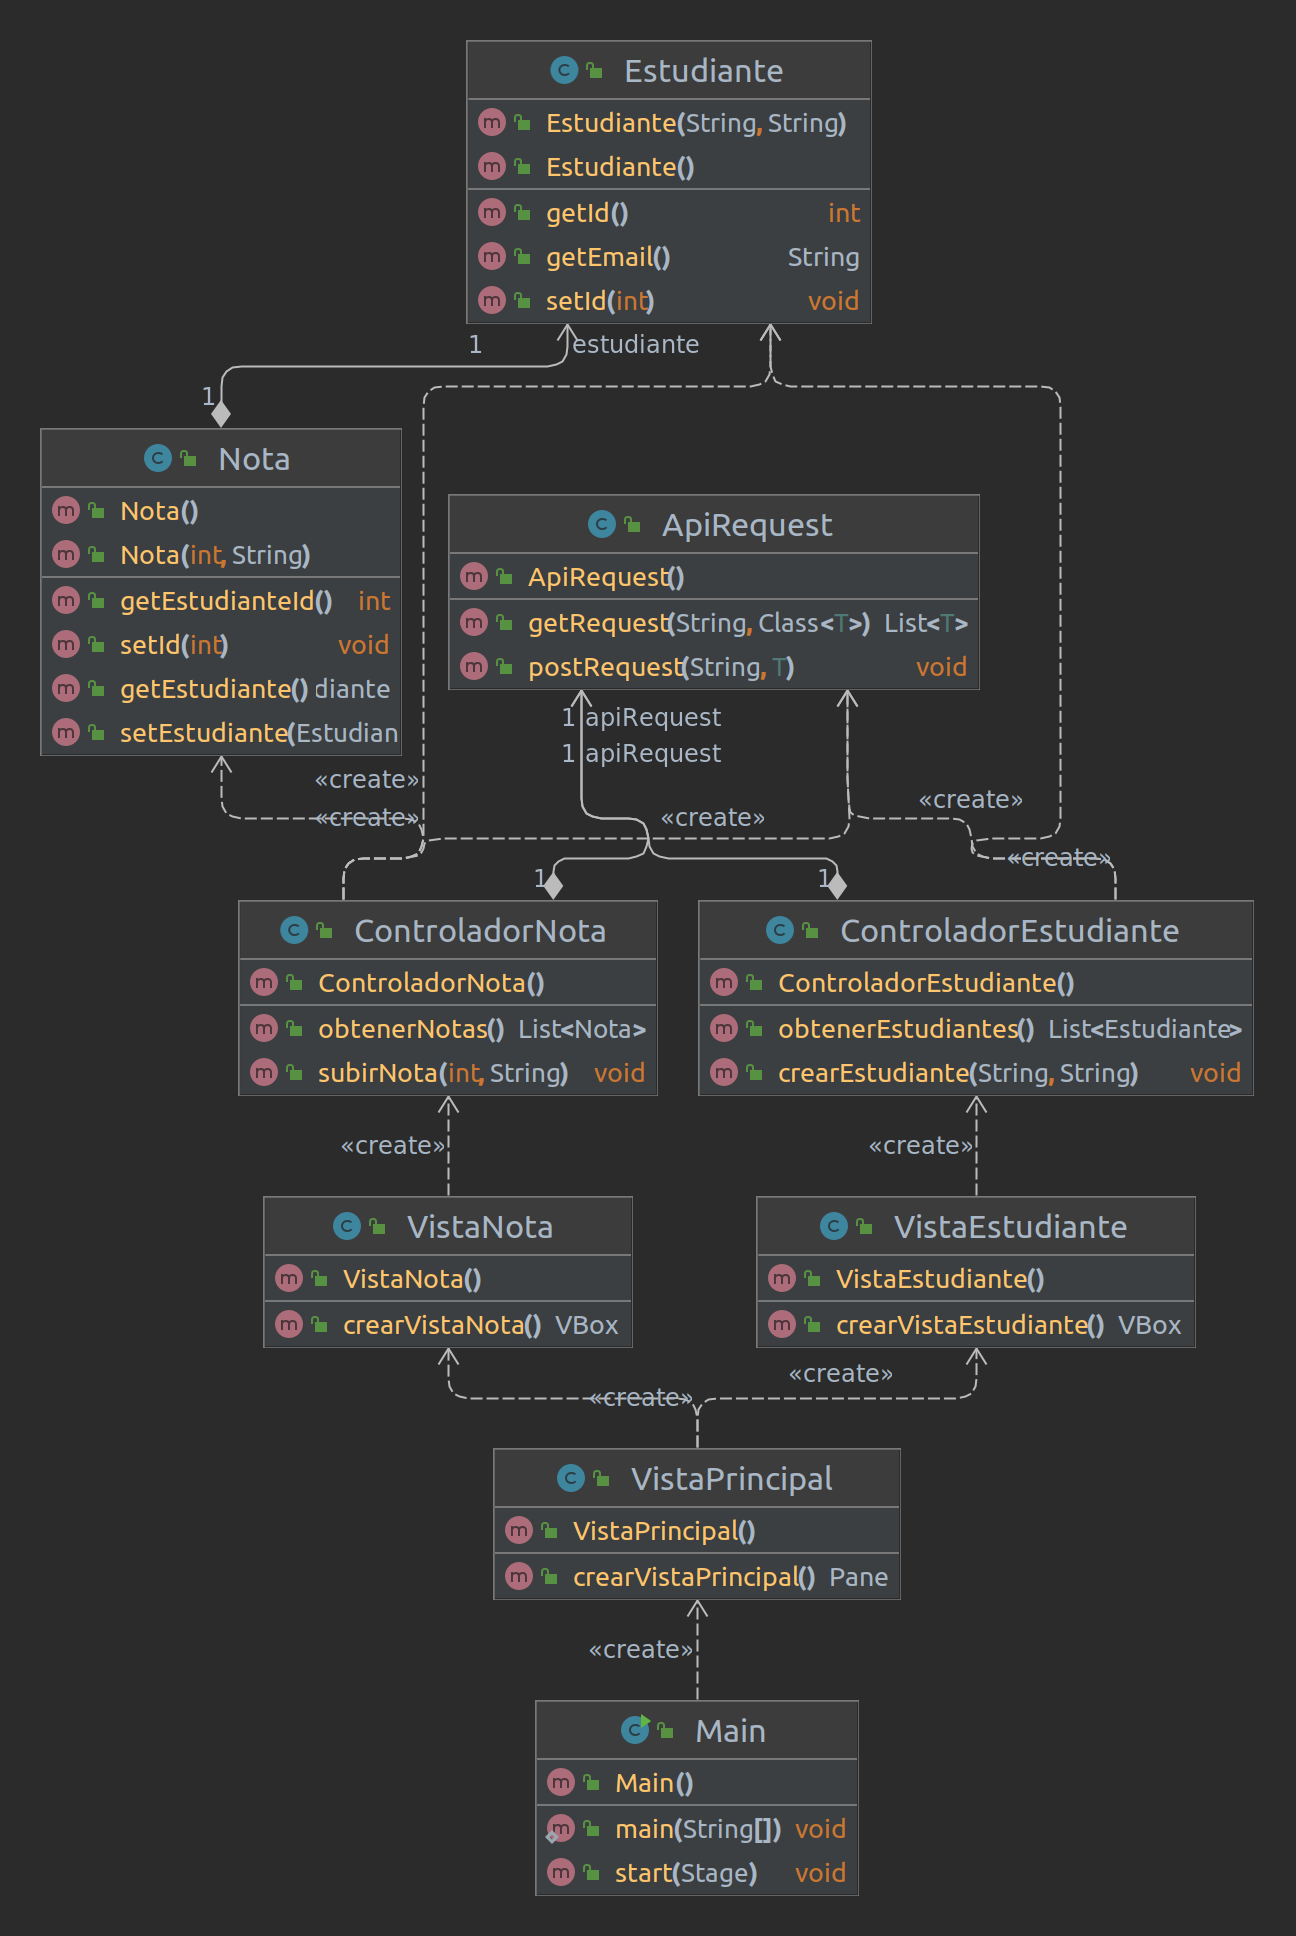 Diagrama UML de la Aplicación JavaFX